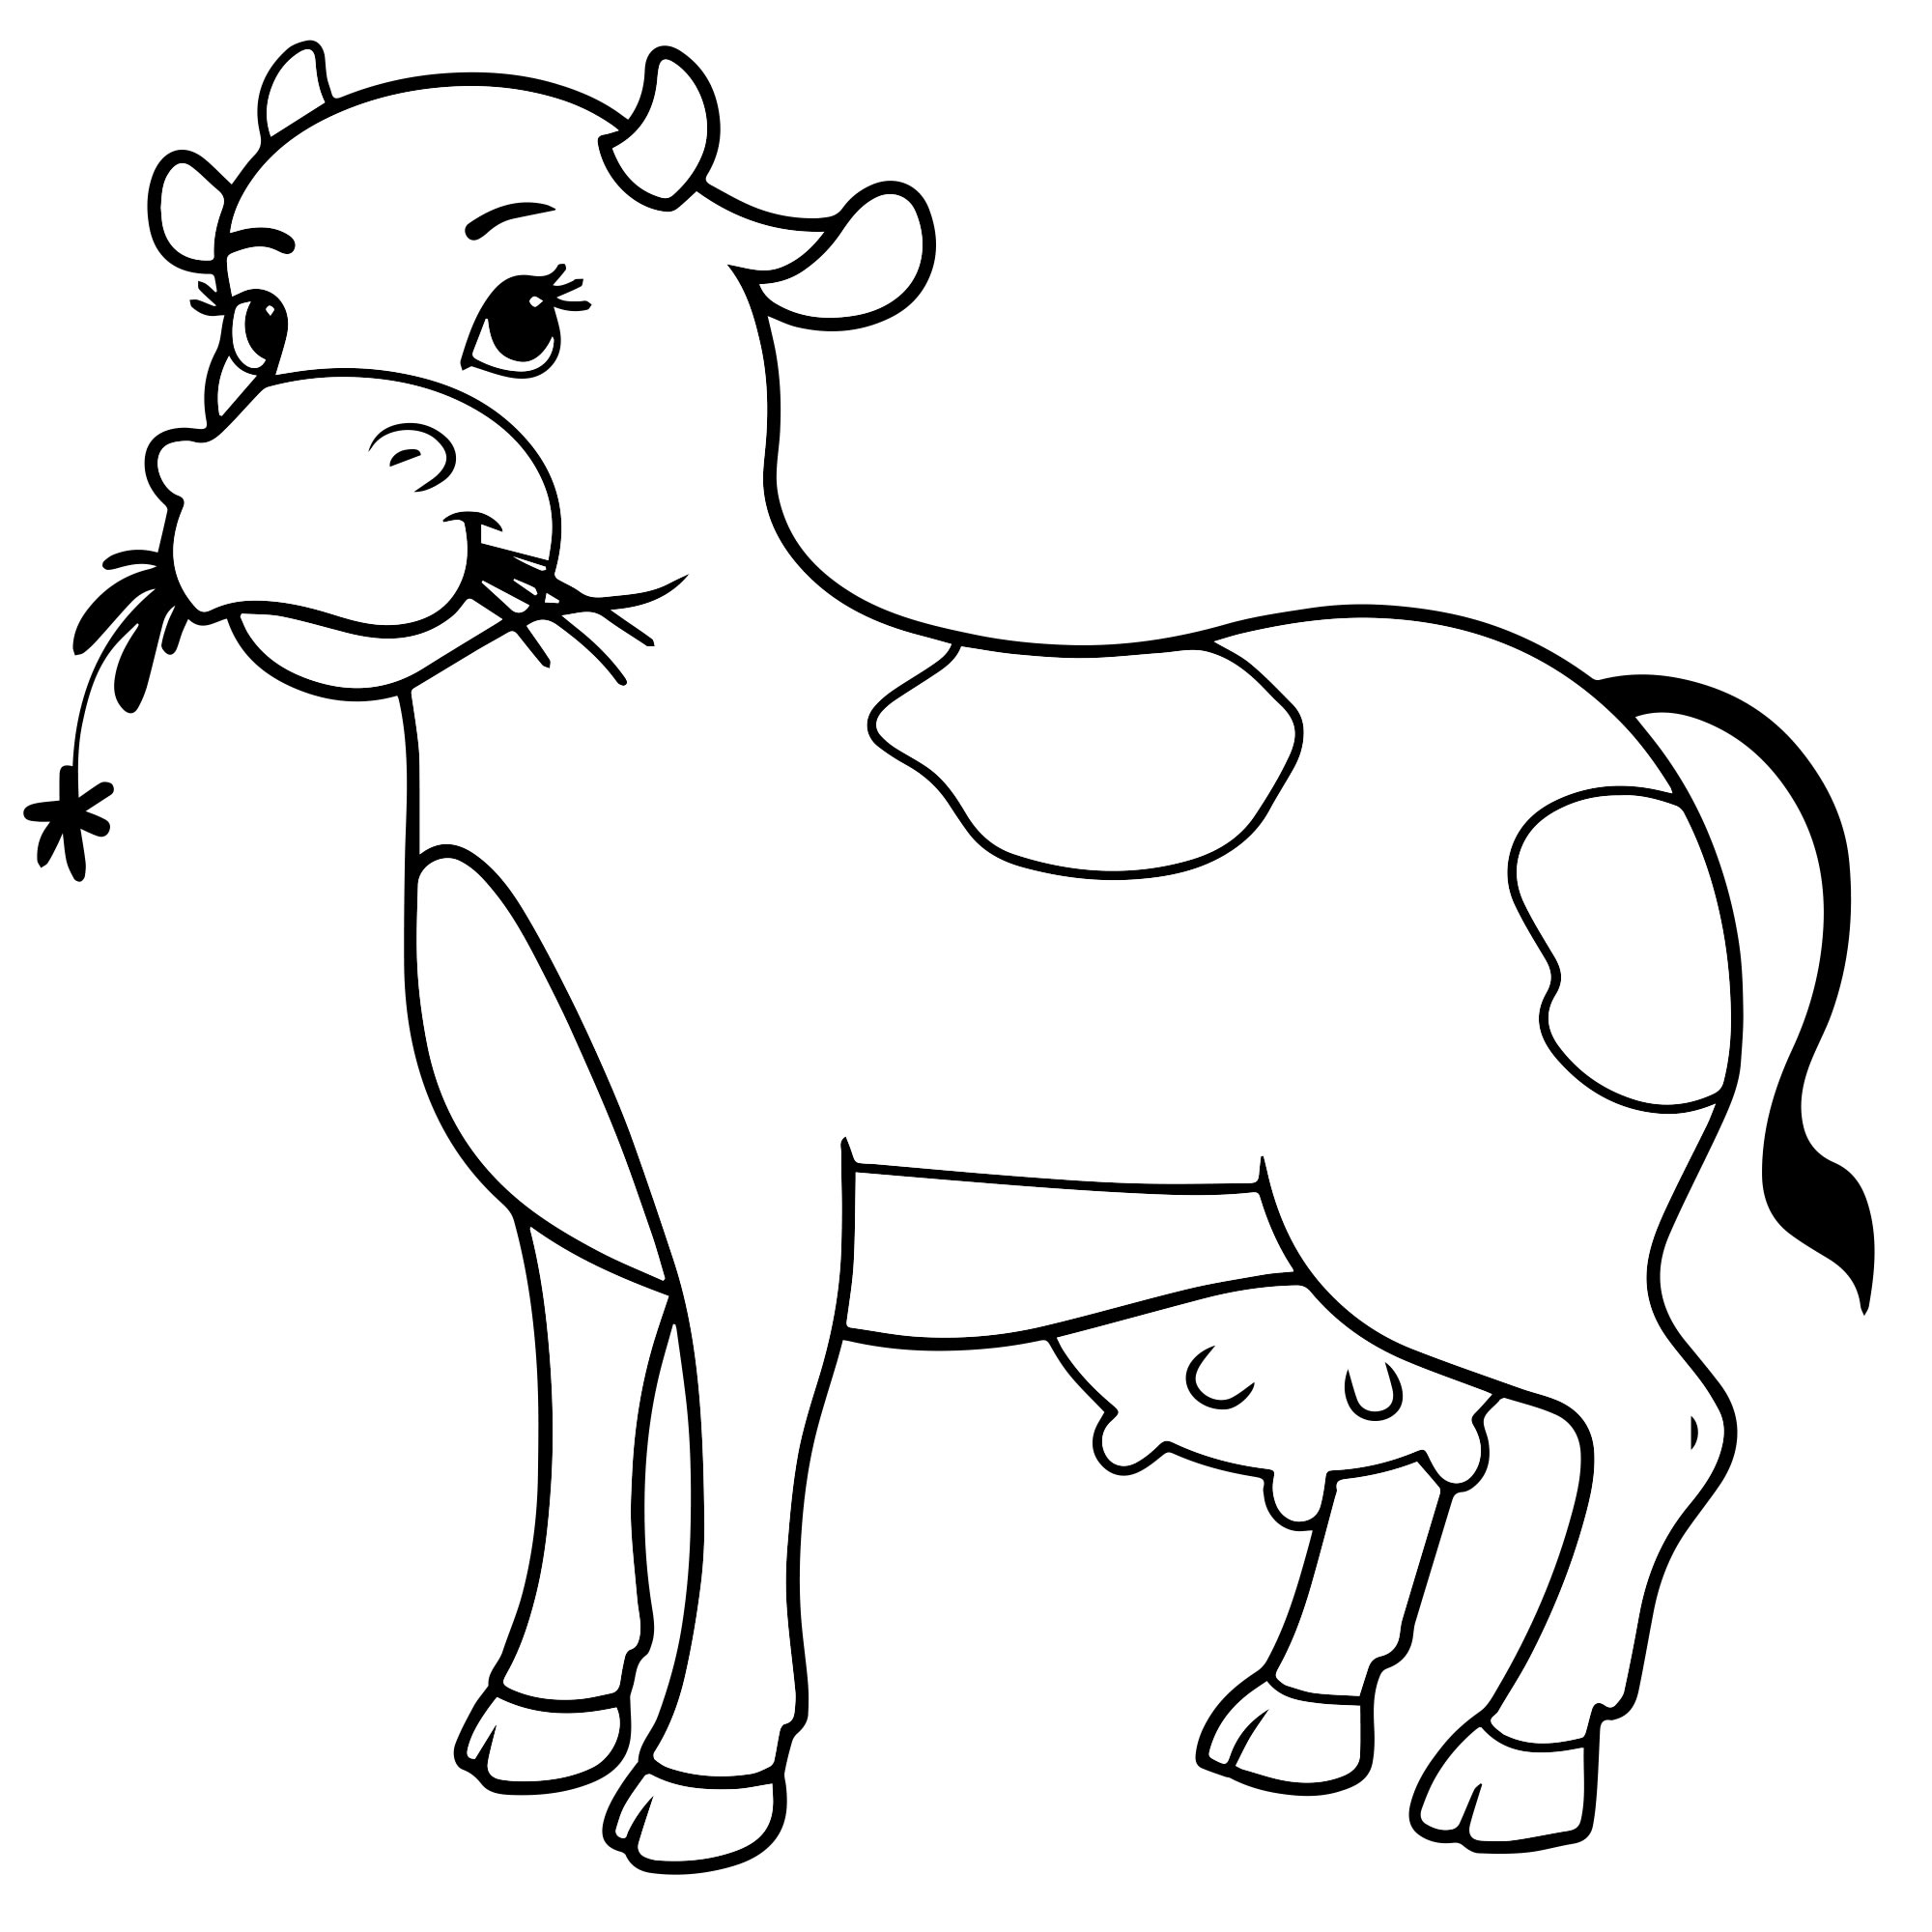 Раскраски Корова - распечатать бесплатно